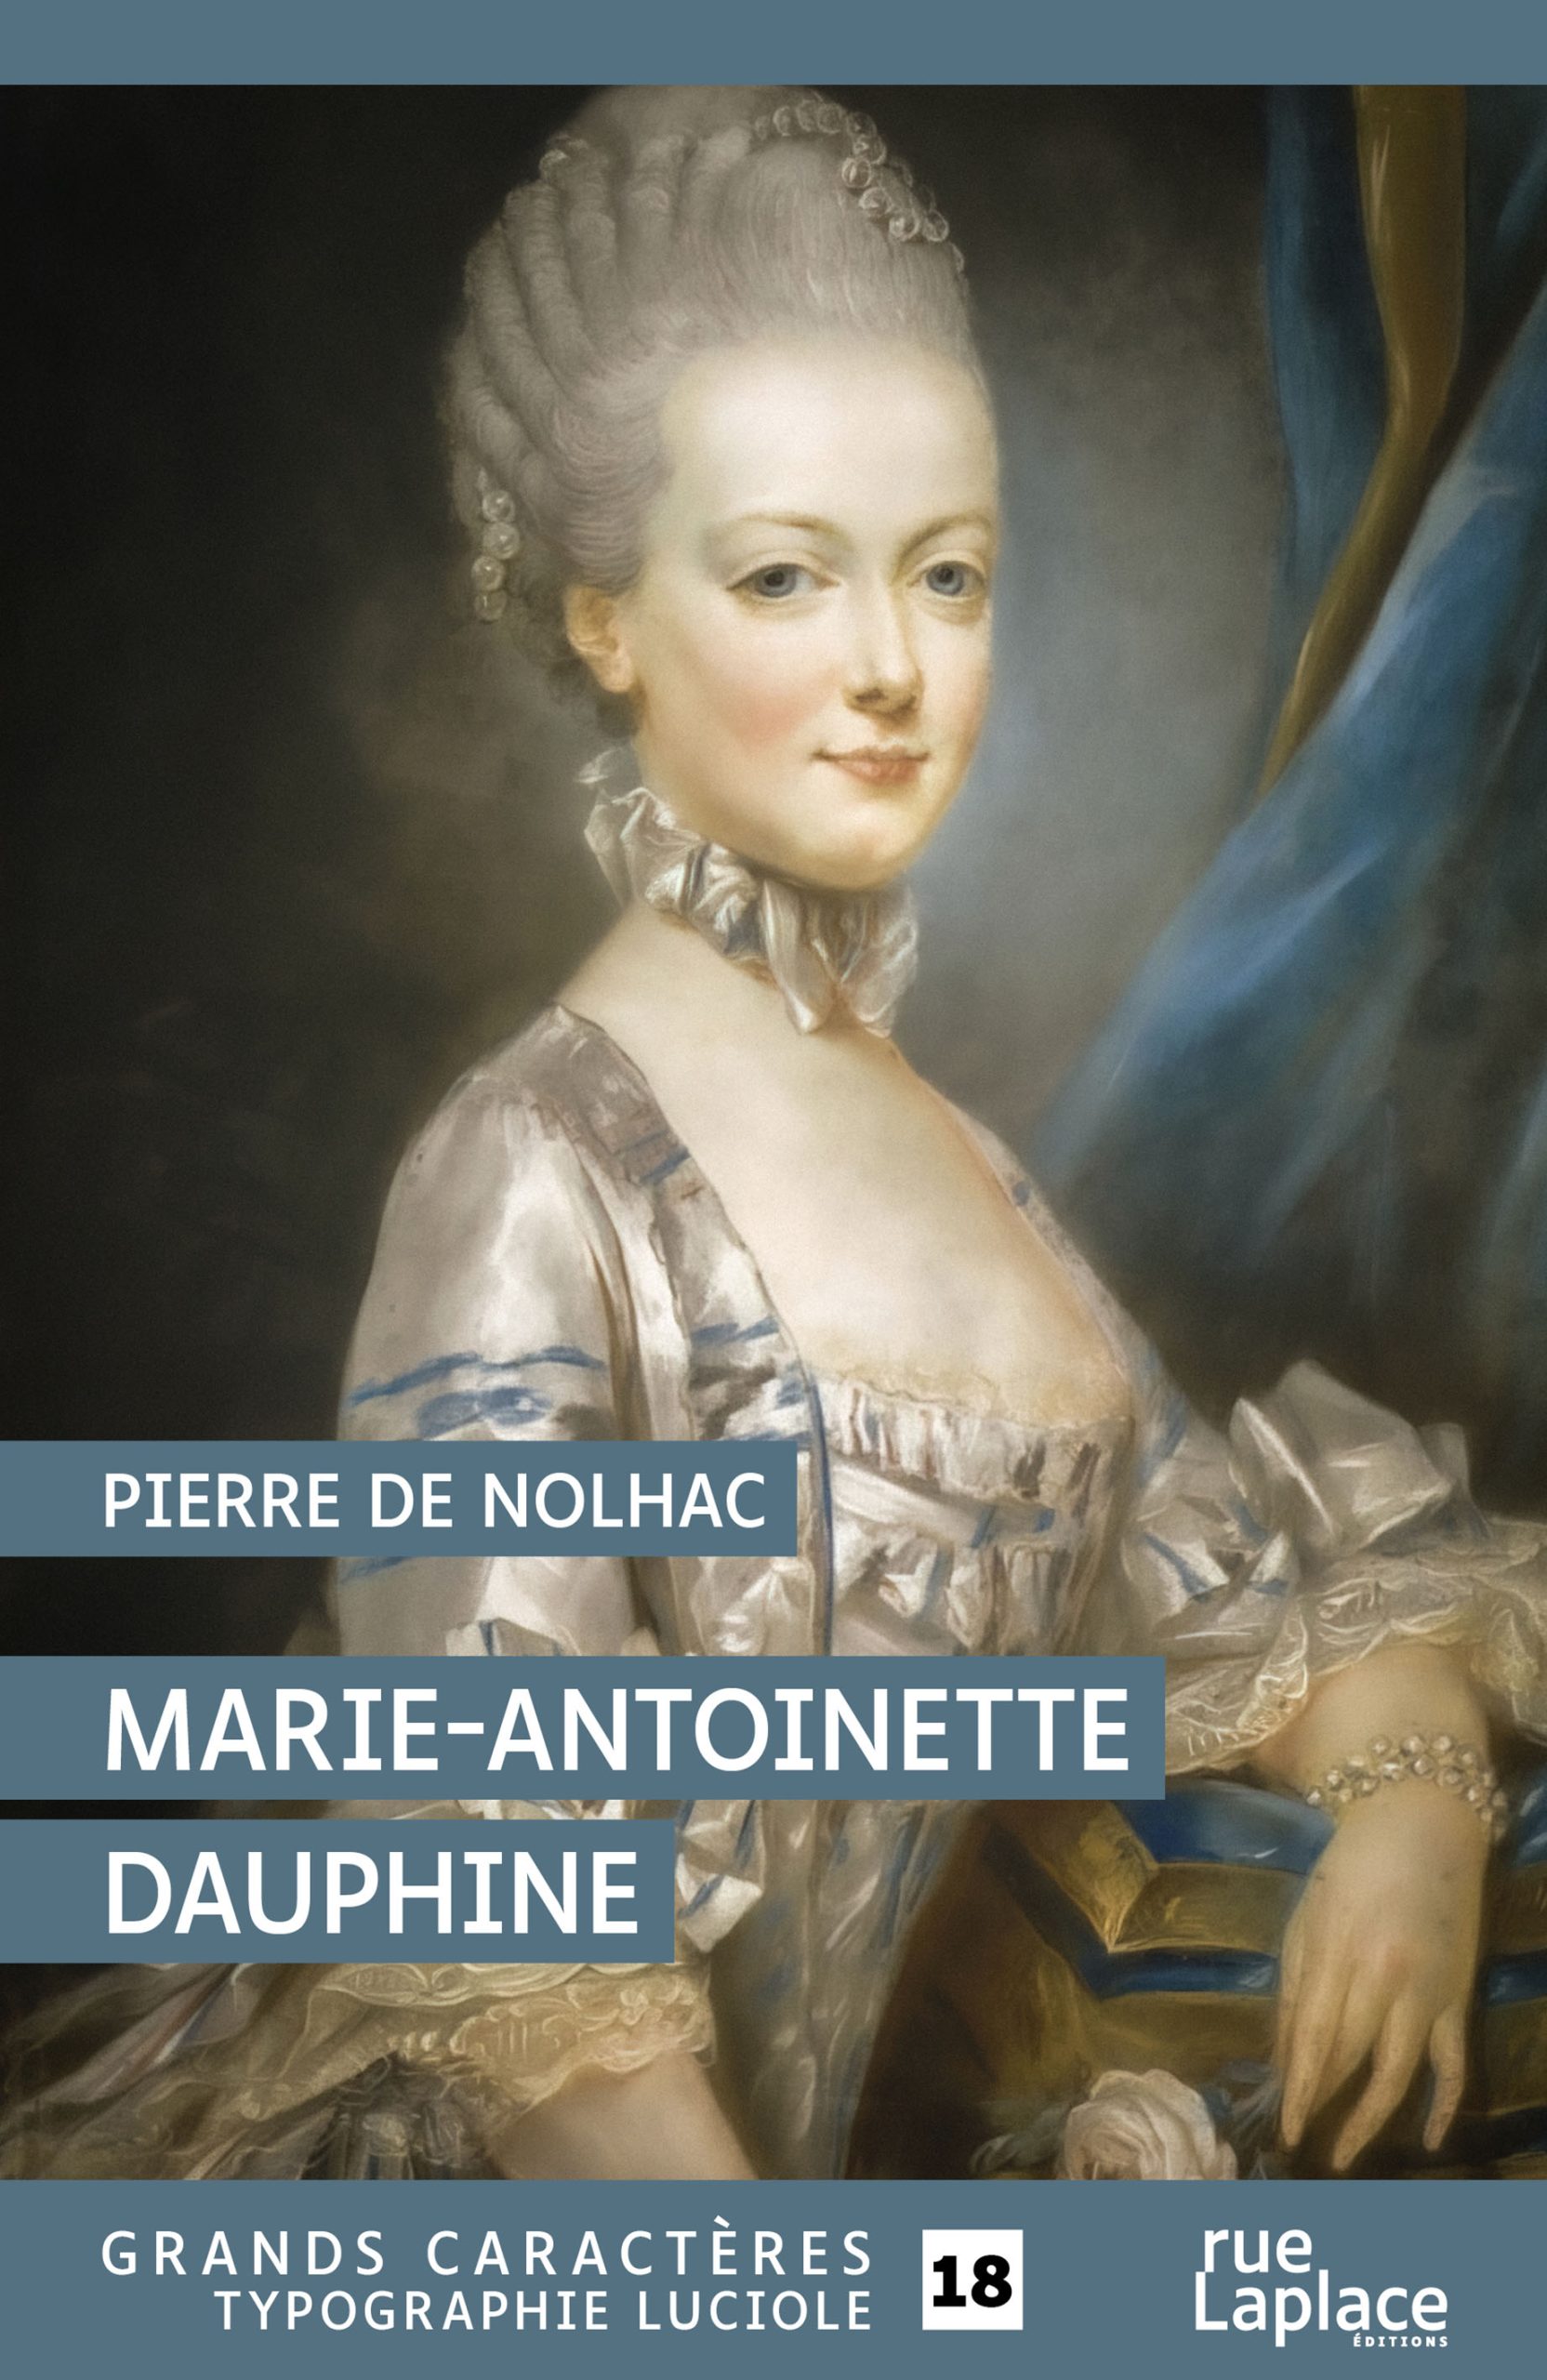 Couverture du livre en grands caractères Marie-Antoinette dauphine de Pierre de Nolhac